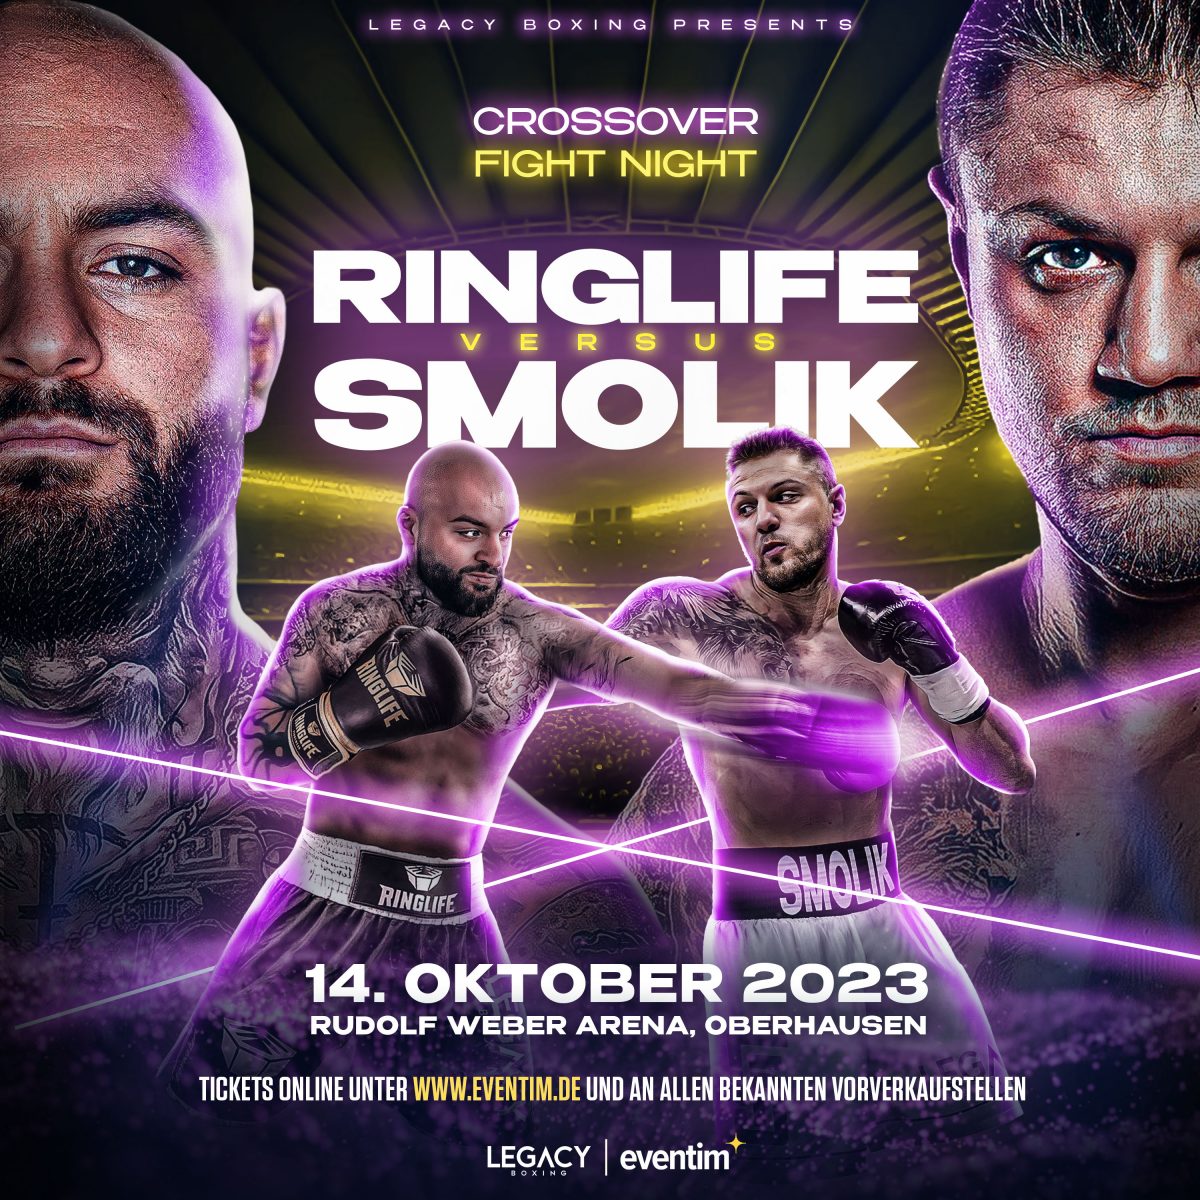 Ringlife vs. Smolik: Tickets für das Boxevent in Oberhausen sichern Sie sich bei uns.